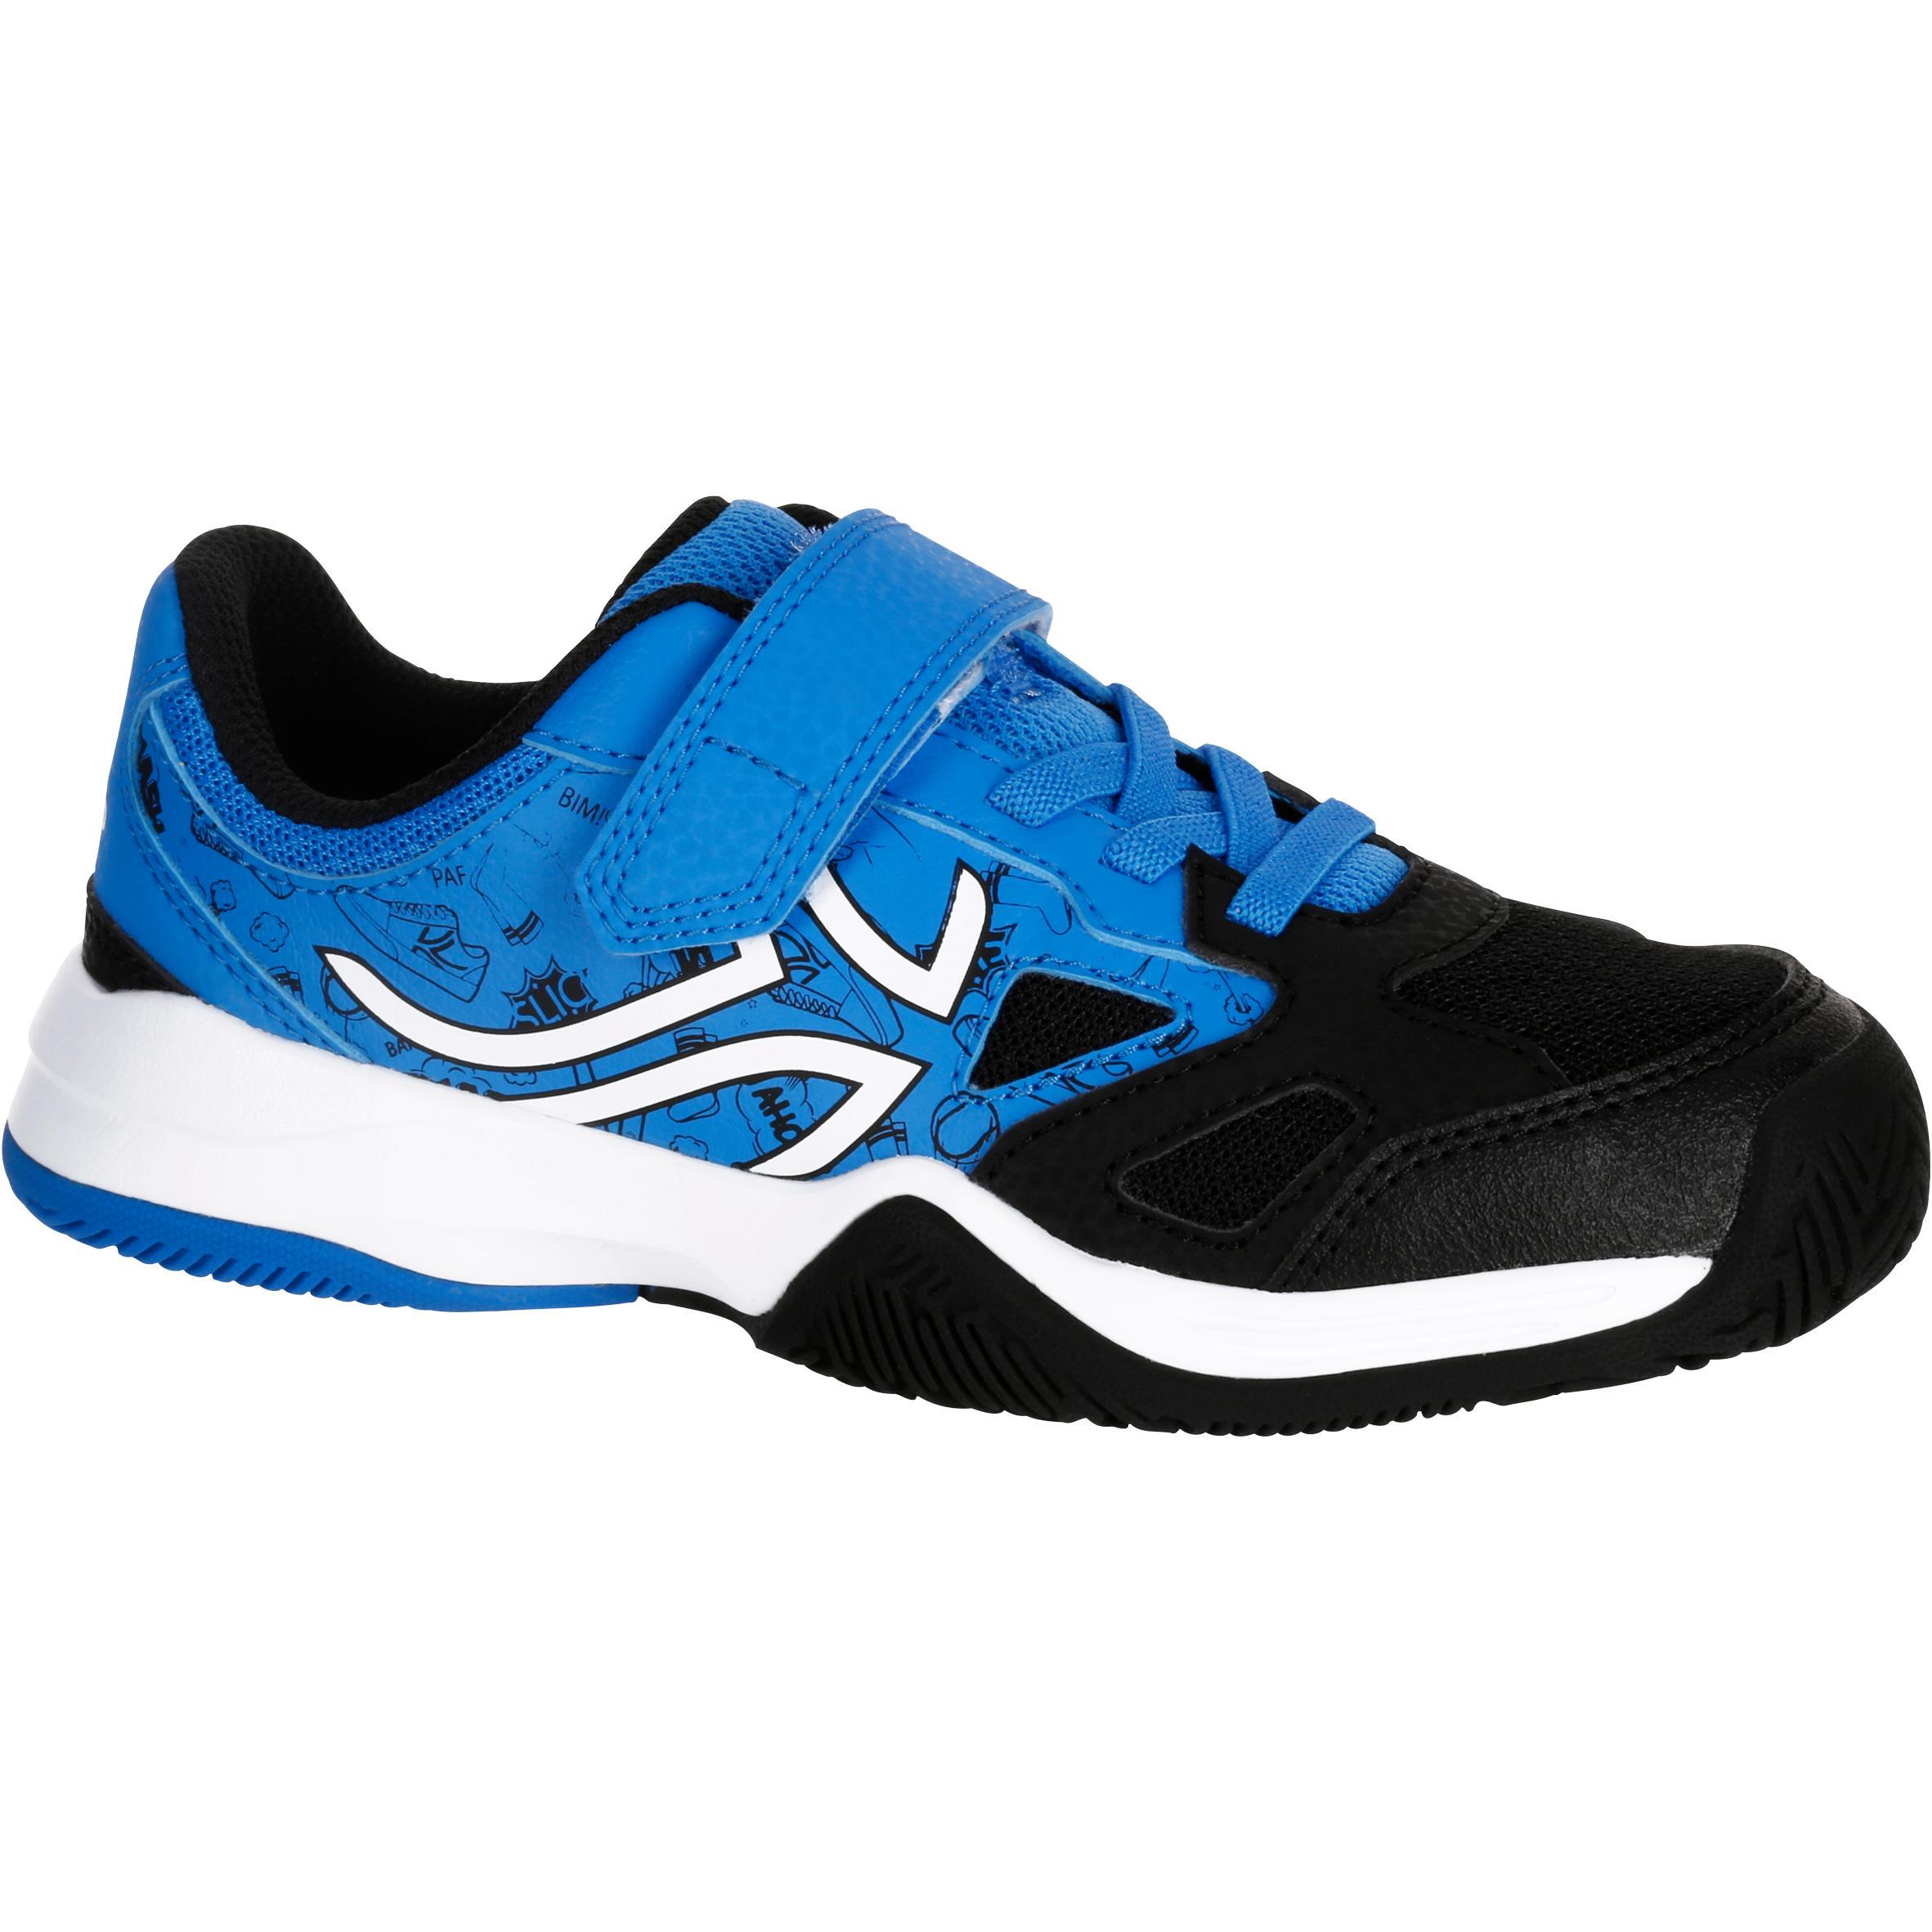 [ด่วน!! โปรโมชั่นมีจำนวนจำกัด] รองเท้าเทนนิสสำหรับเด็กรุ่น Ts560 (สีน้ำเงิน/ดำ) สำหรับ เทนนิส. 